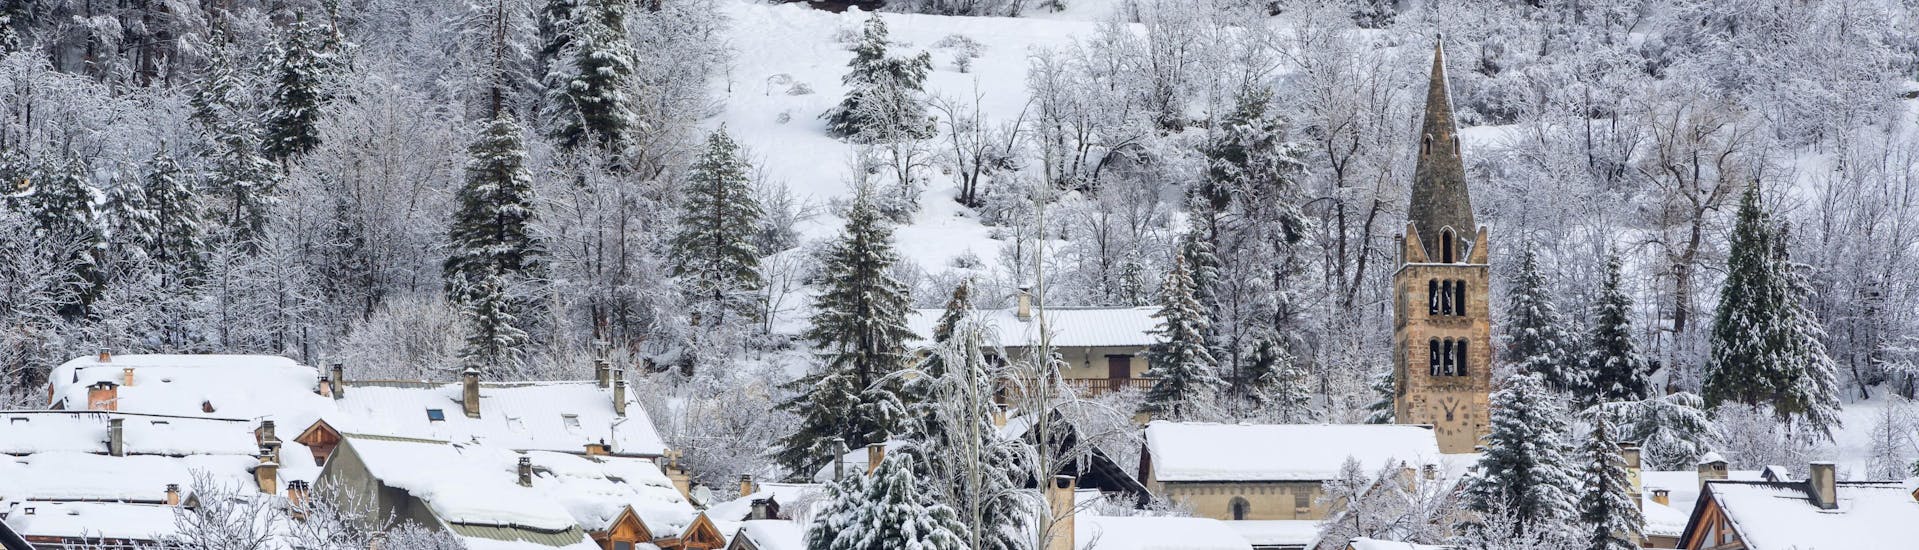 Klein dorpje Serre-Chevalier Villeneuve bedekt met sneeuw.